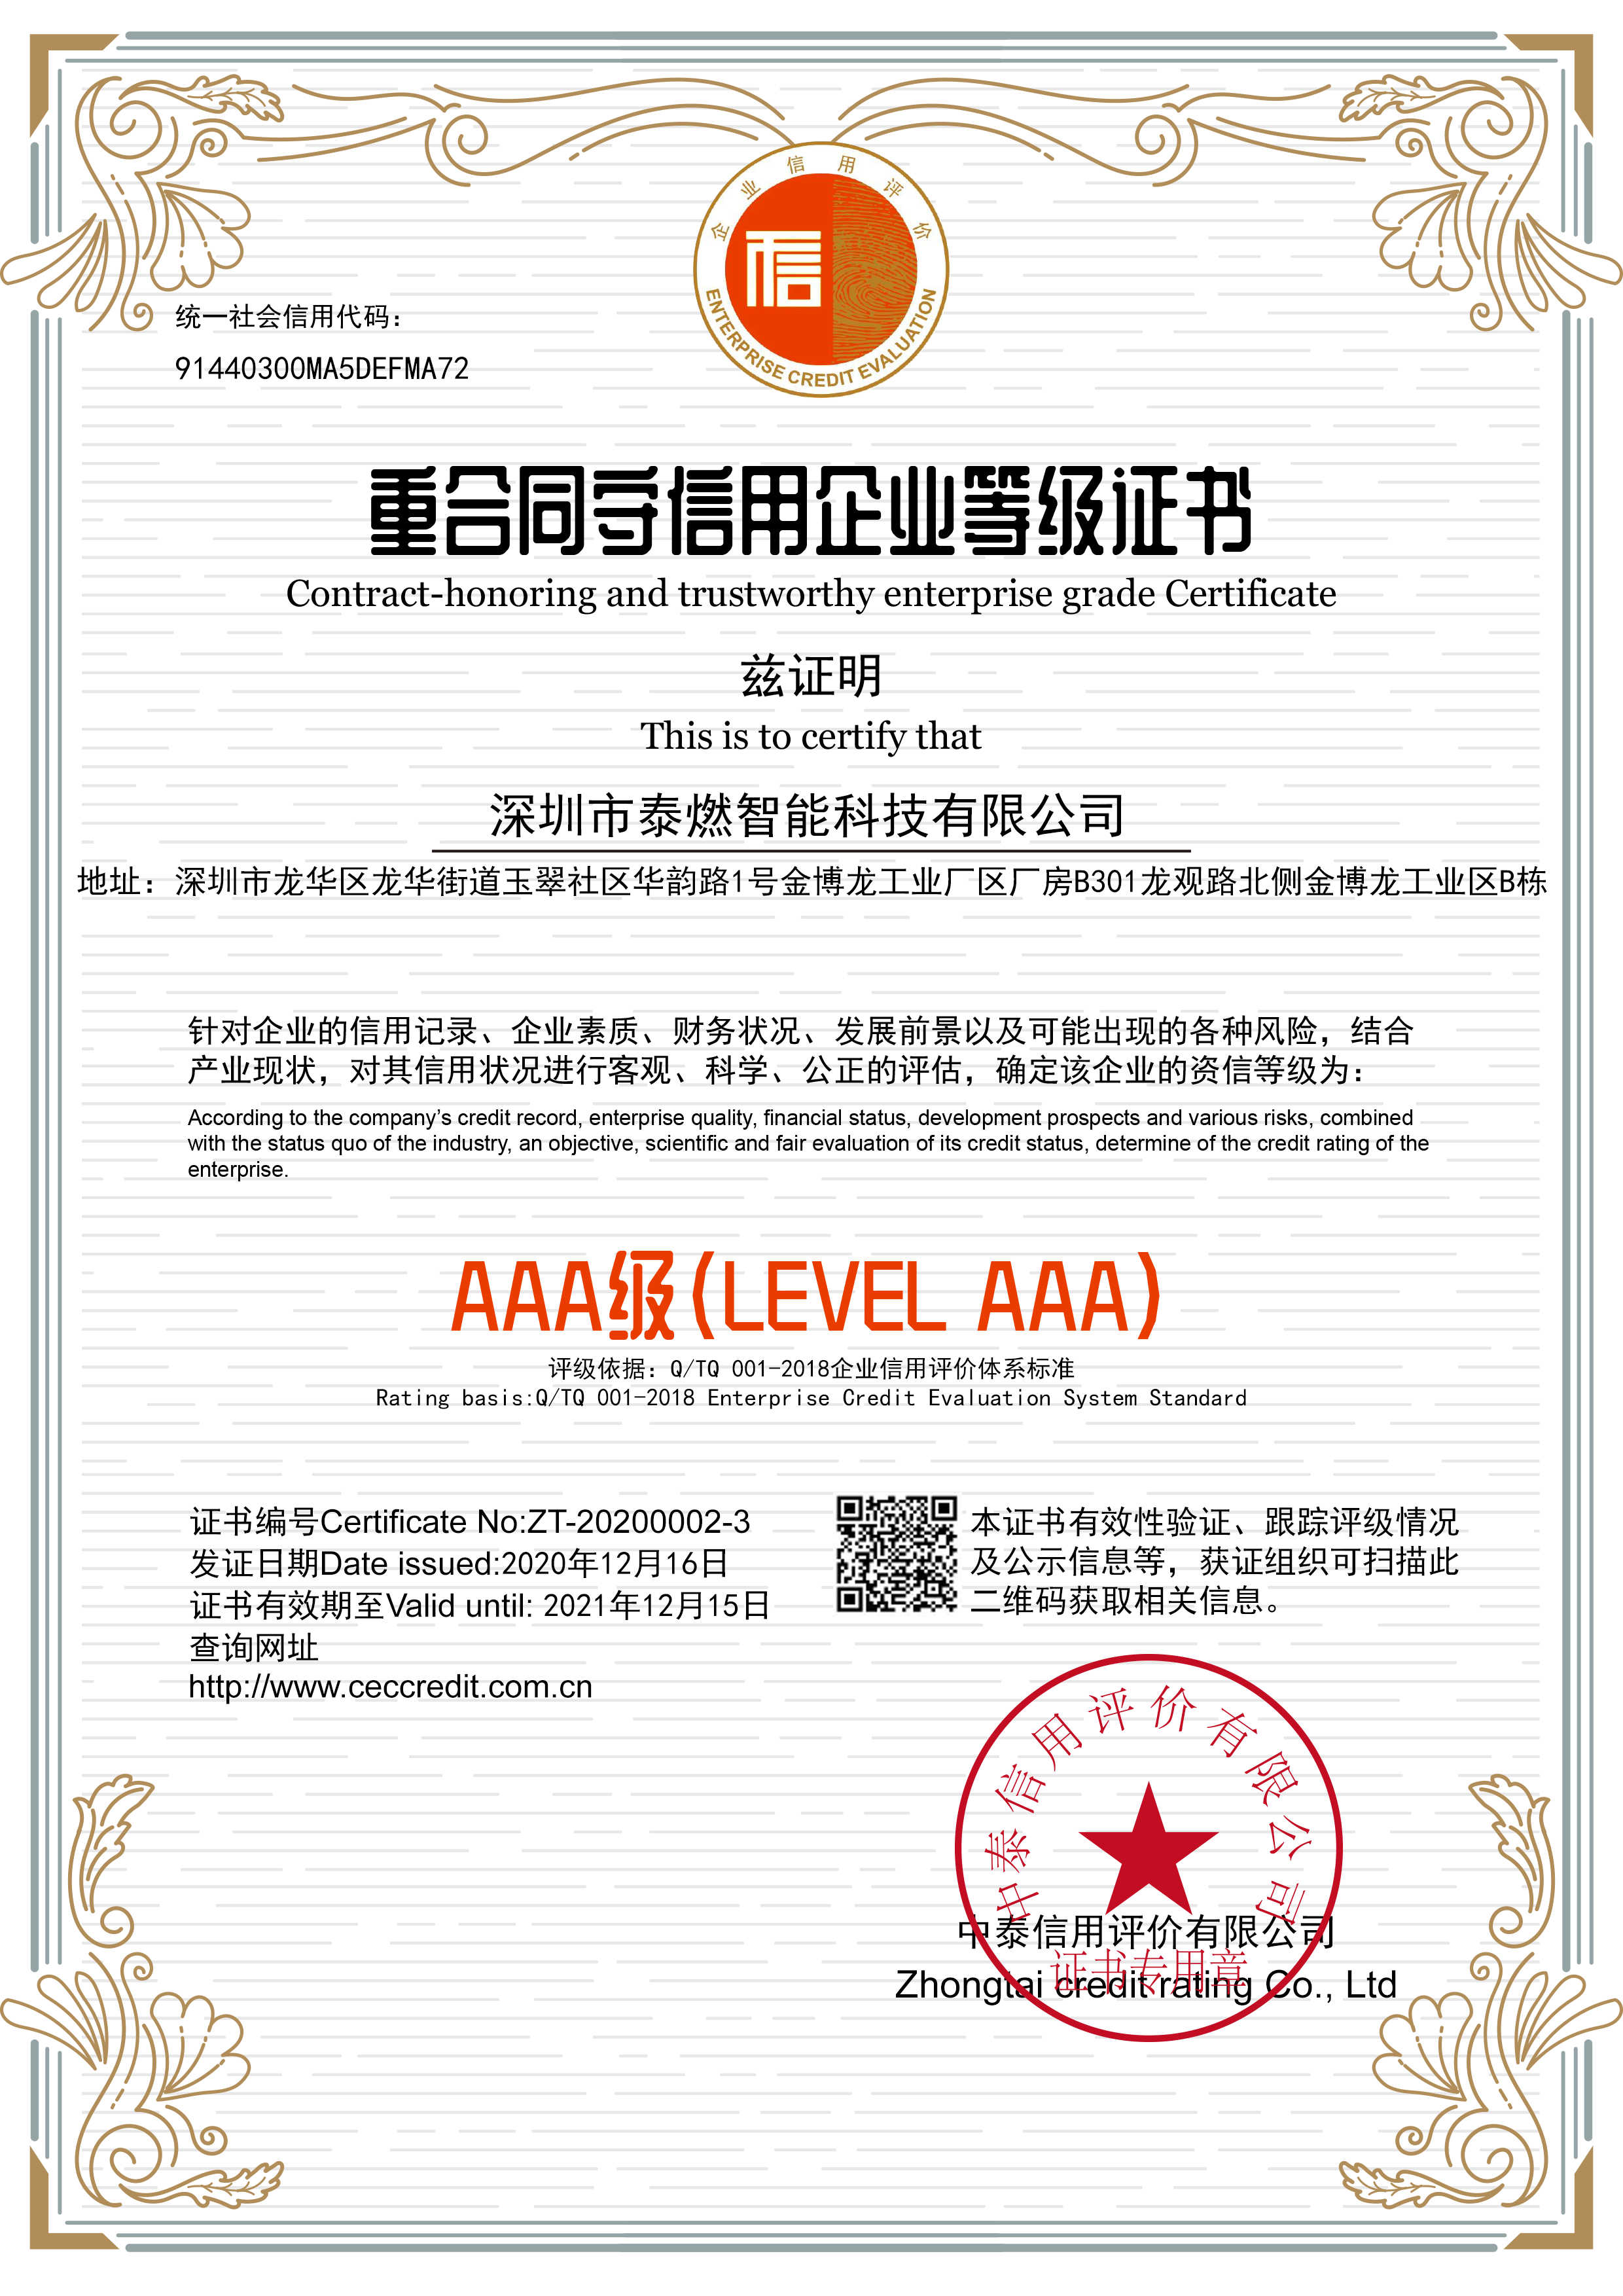 祝贺泰燃智能荣获 ”重合同守信用AAA等级“证书